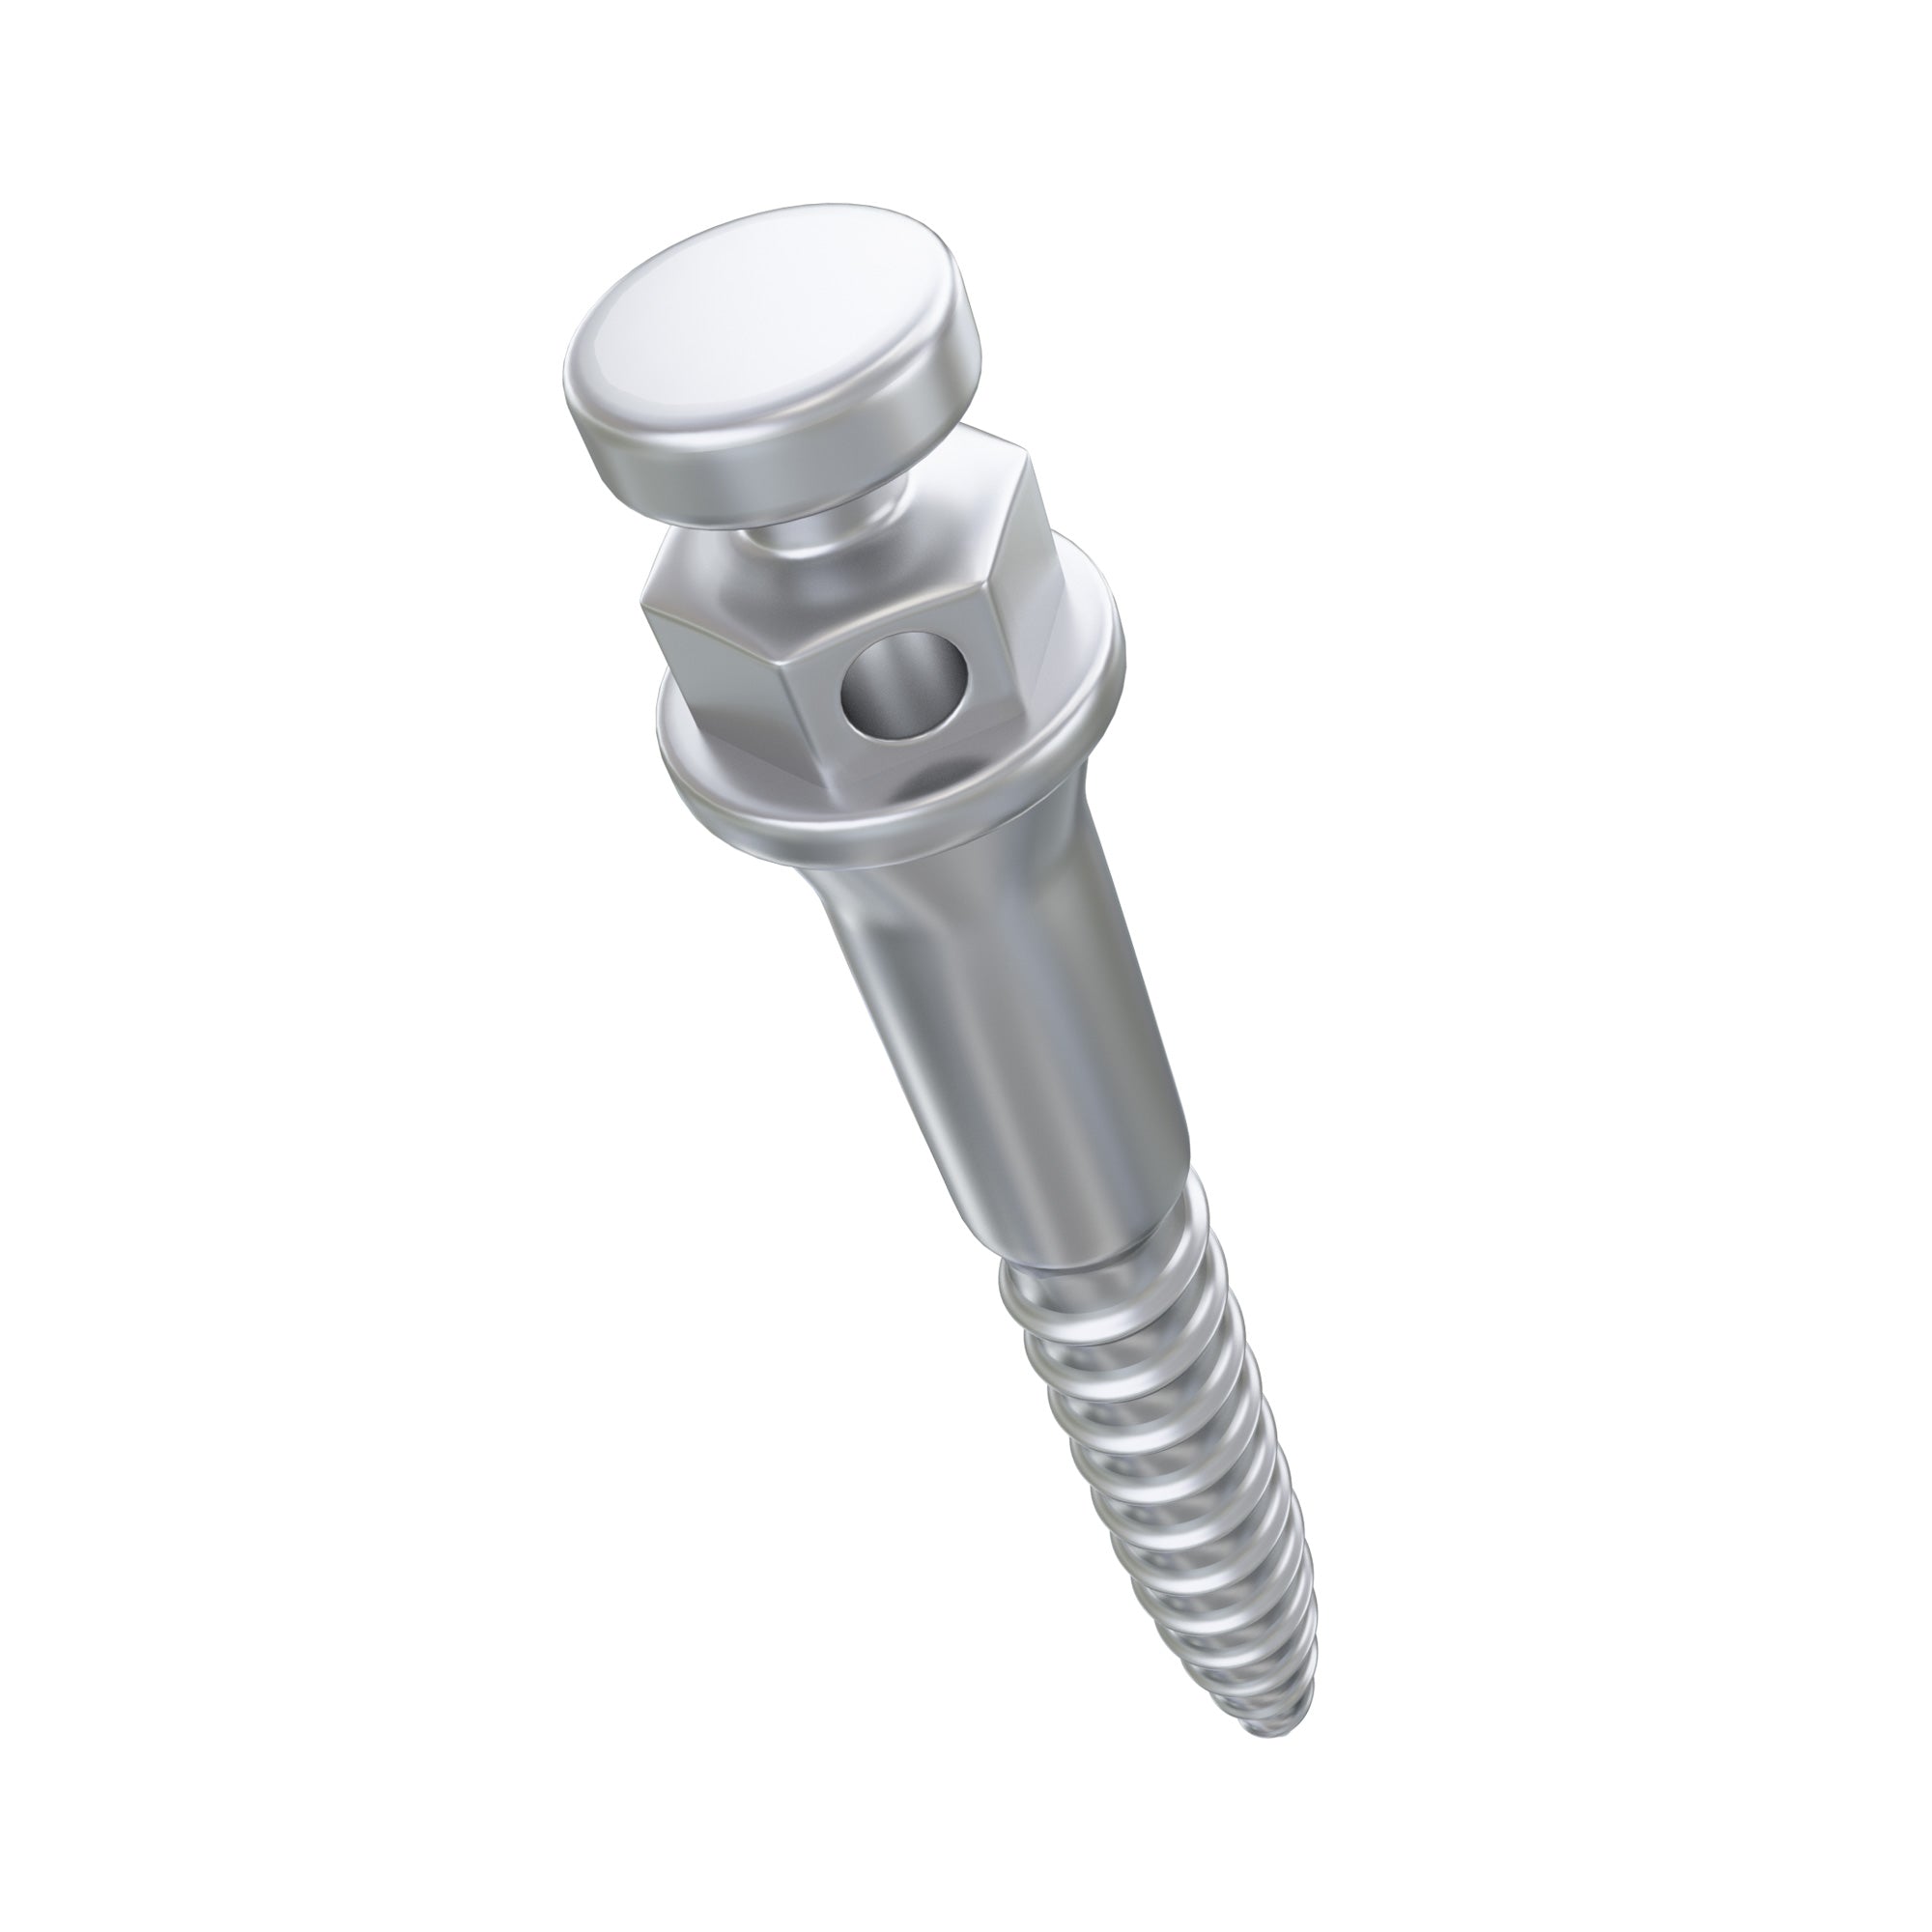 DSI TAD Miniscrew Orthodontic Buccal Shelf Screw Ø2.0mm T/M 4.0mm